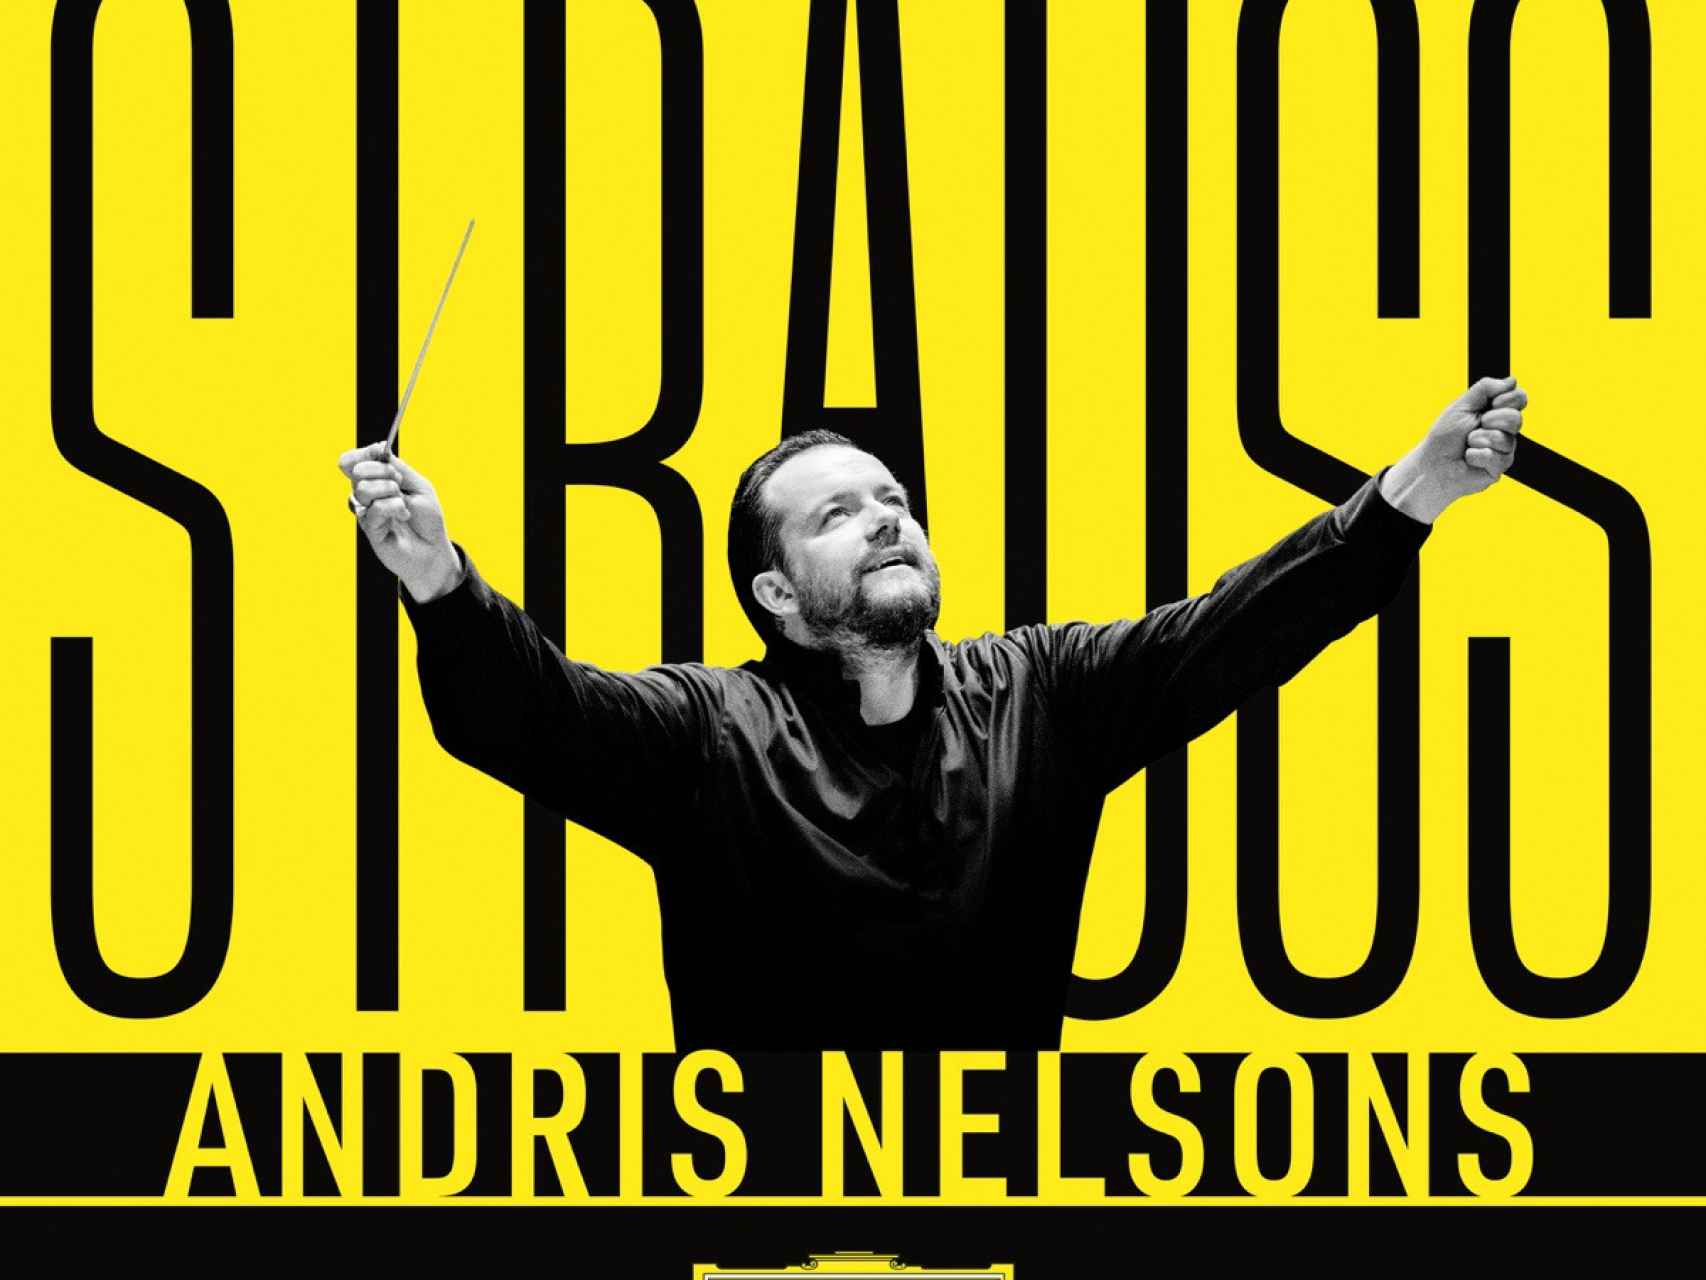 Portada de una grabación con las obras de Strauss de Andris Nelsons